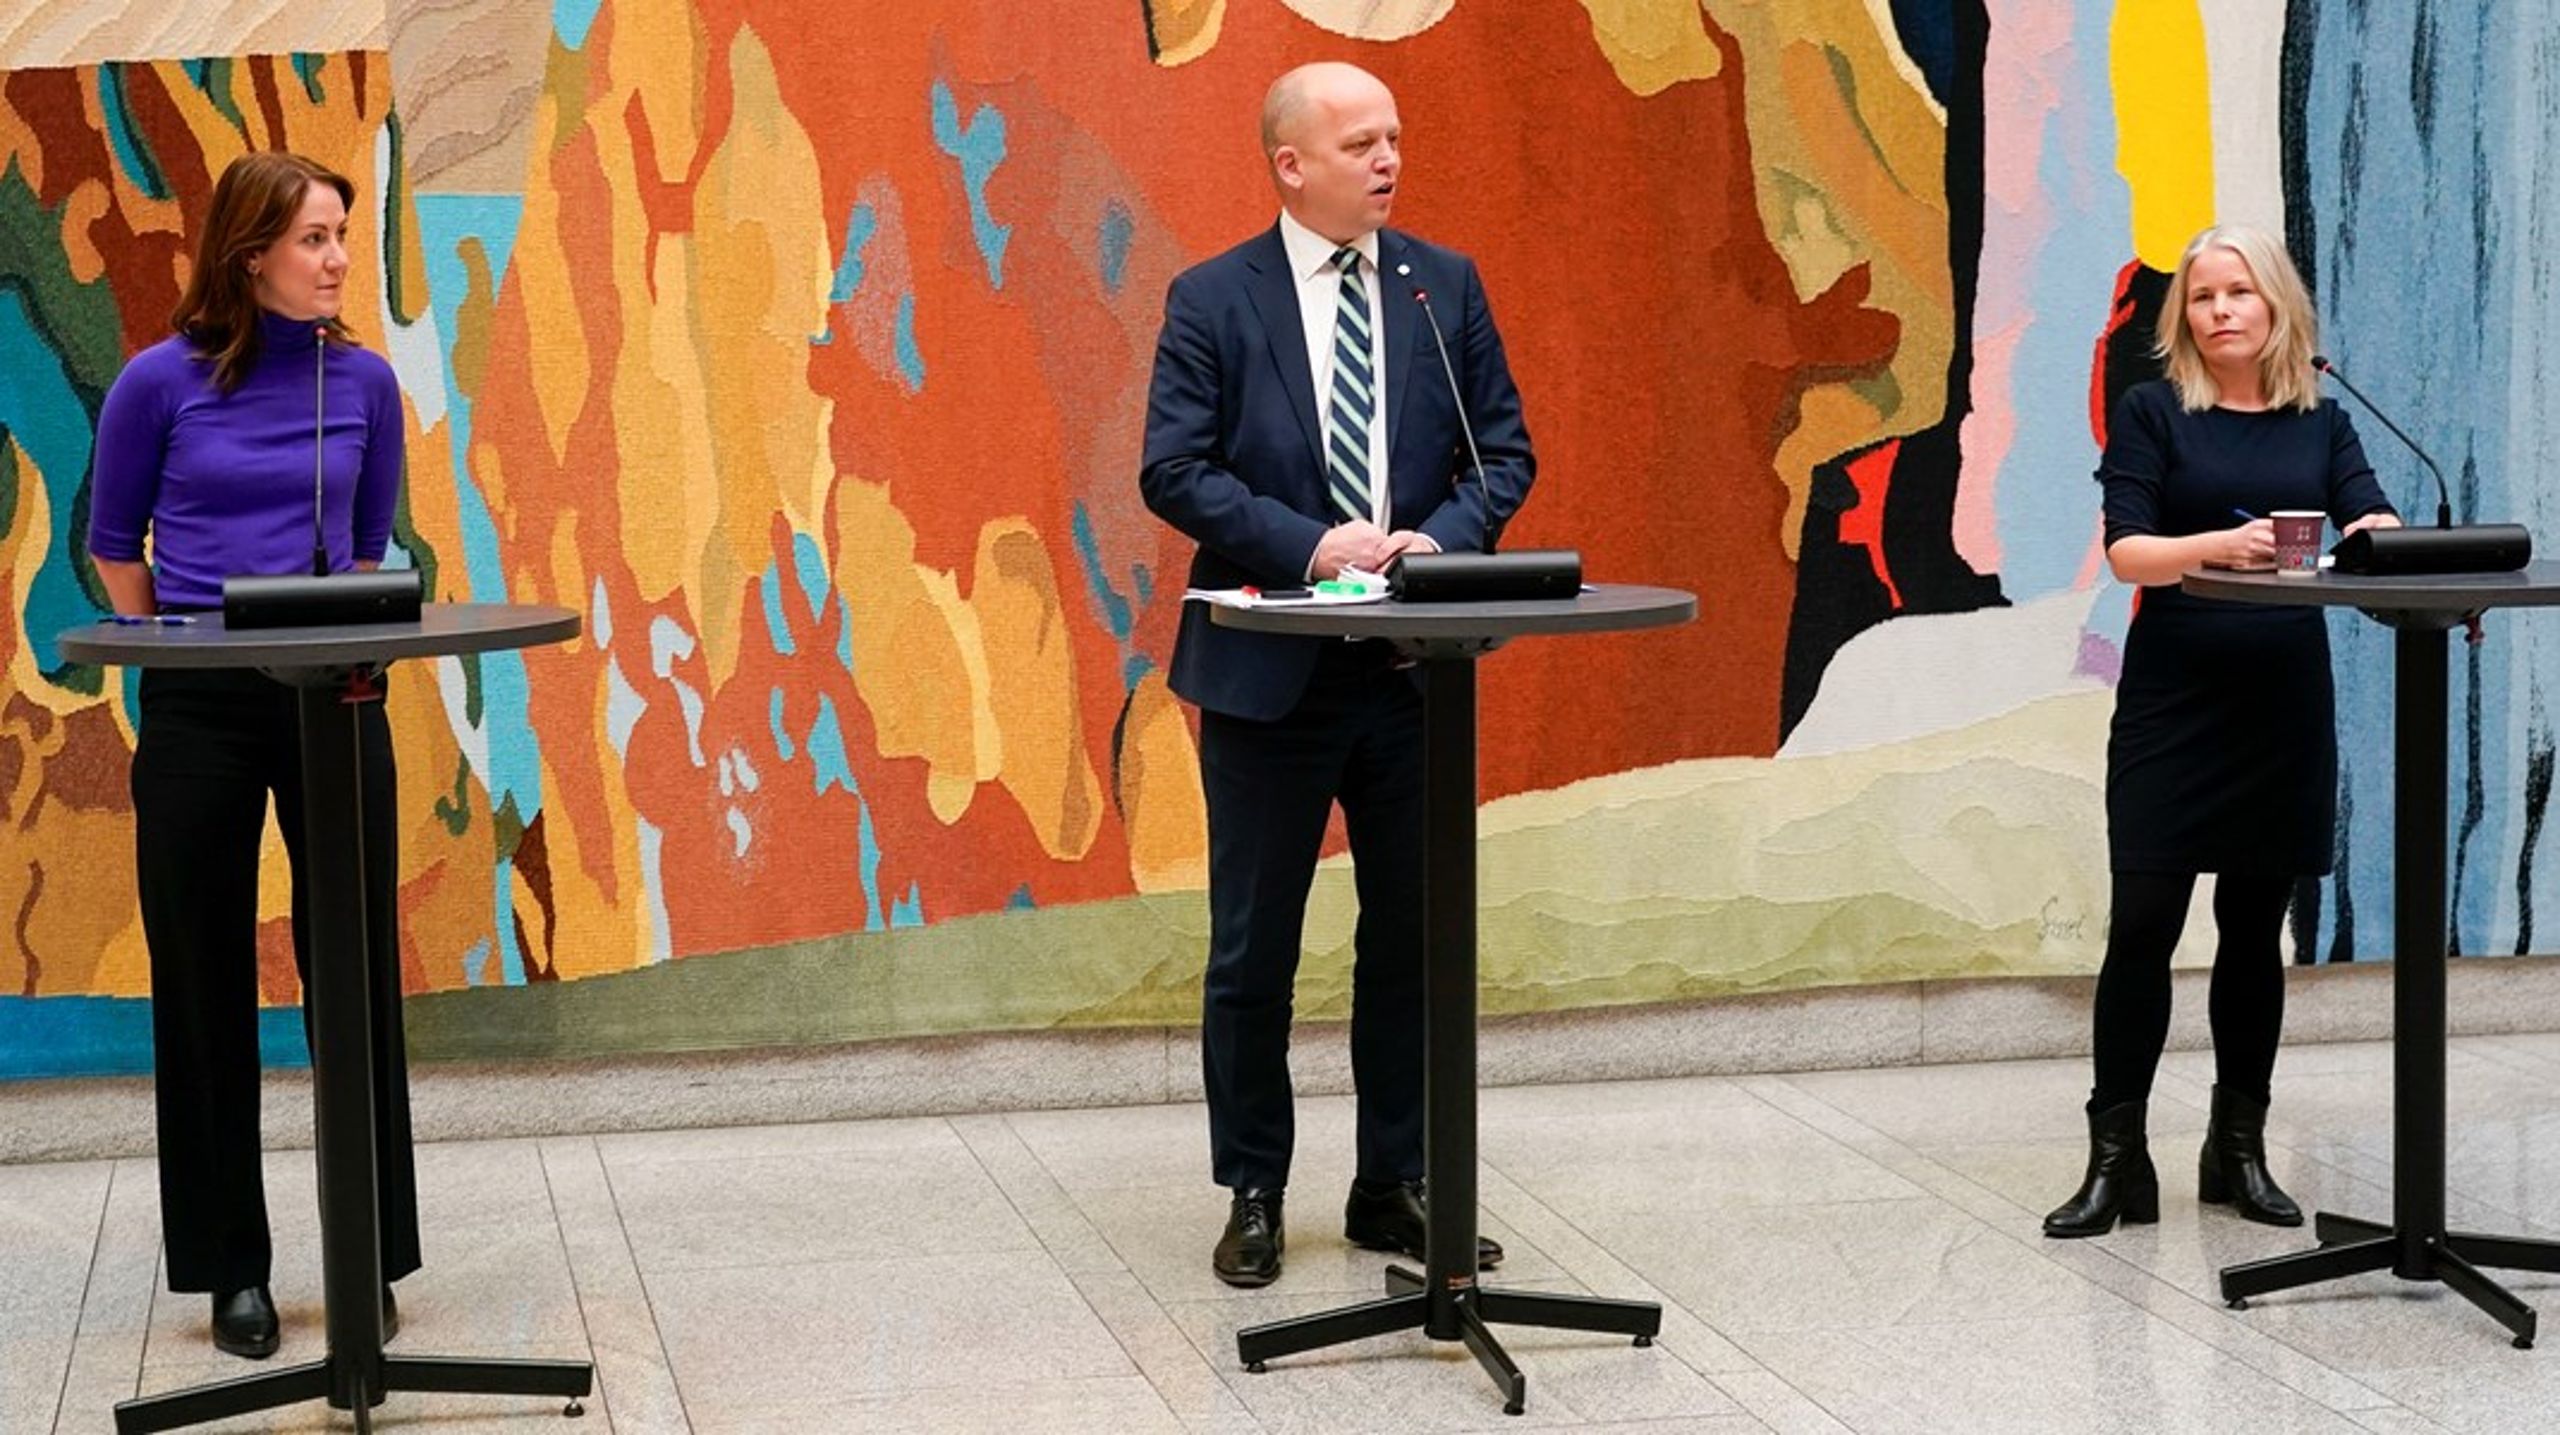 Tonje Brenna, Trygve Slagsvold Vedum og Kirsti Bergstø presenterte budsjettavtalen i Stortingets vandrehall søndag morgen.&nbsp;